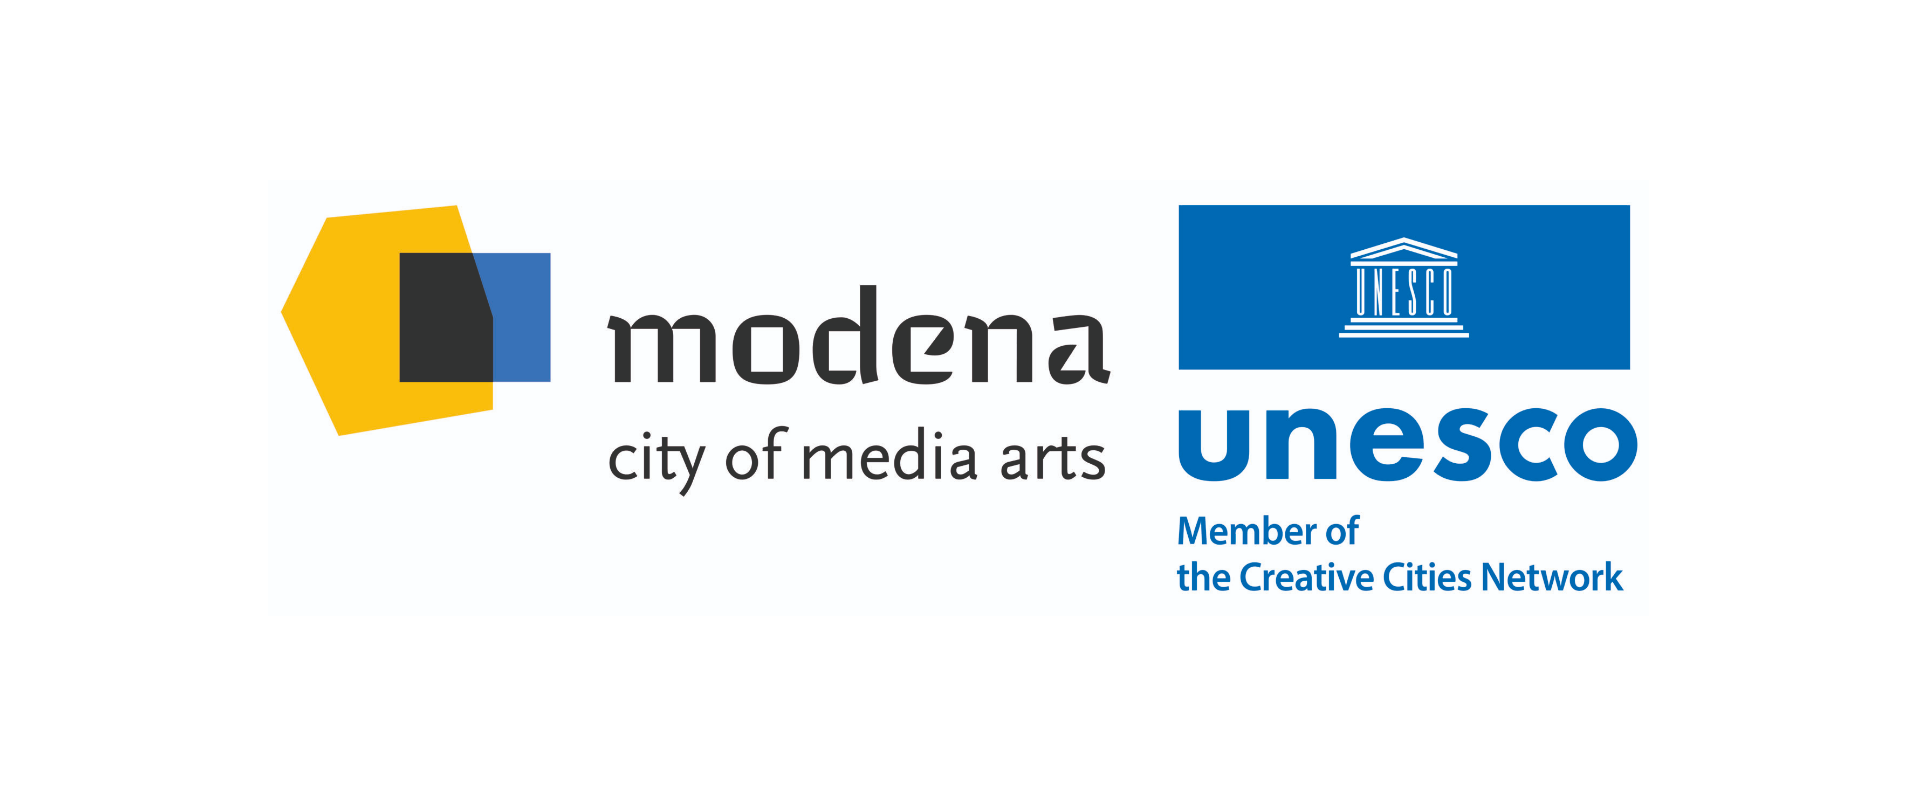 Unesco approva il nuovo logo Modena City of media arts